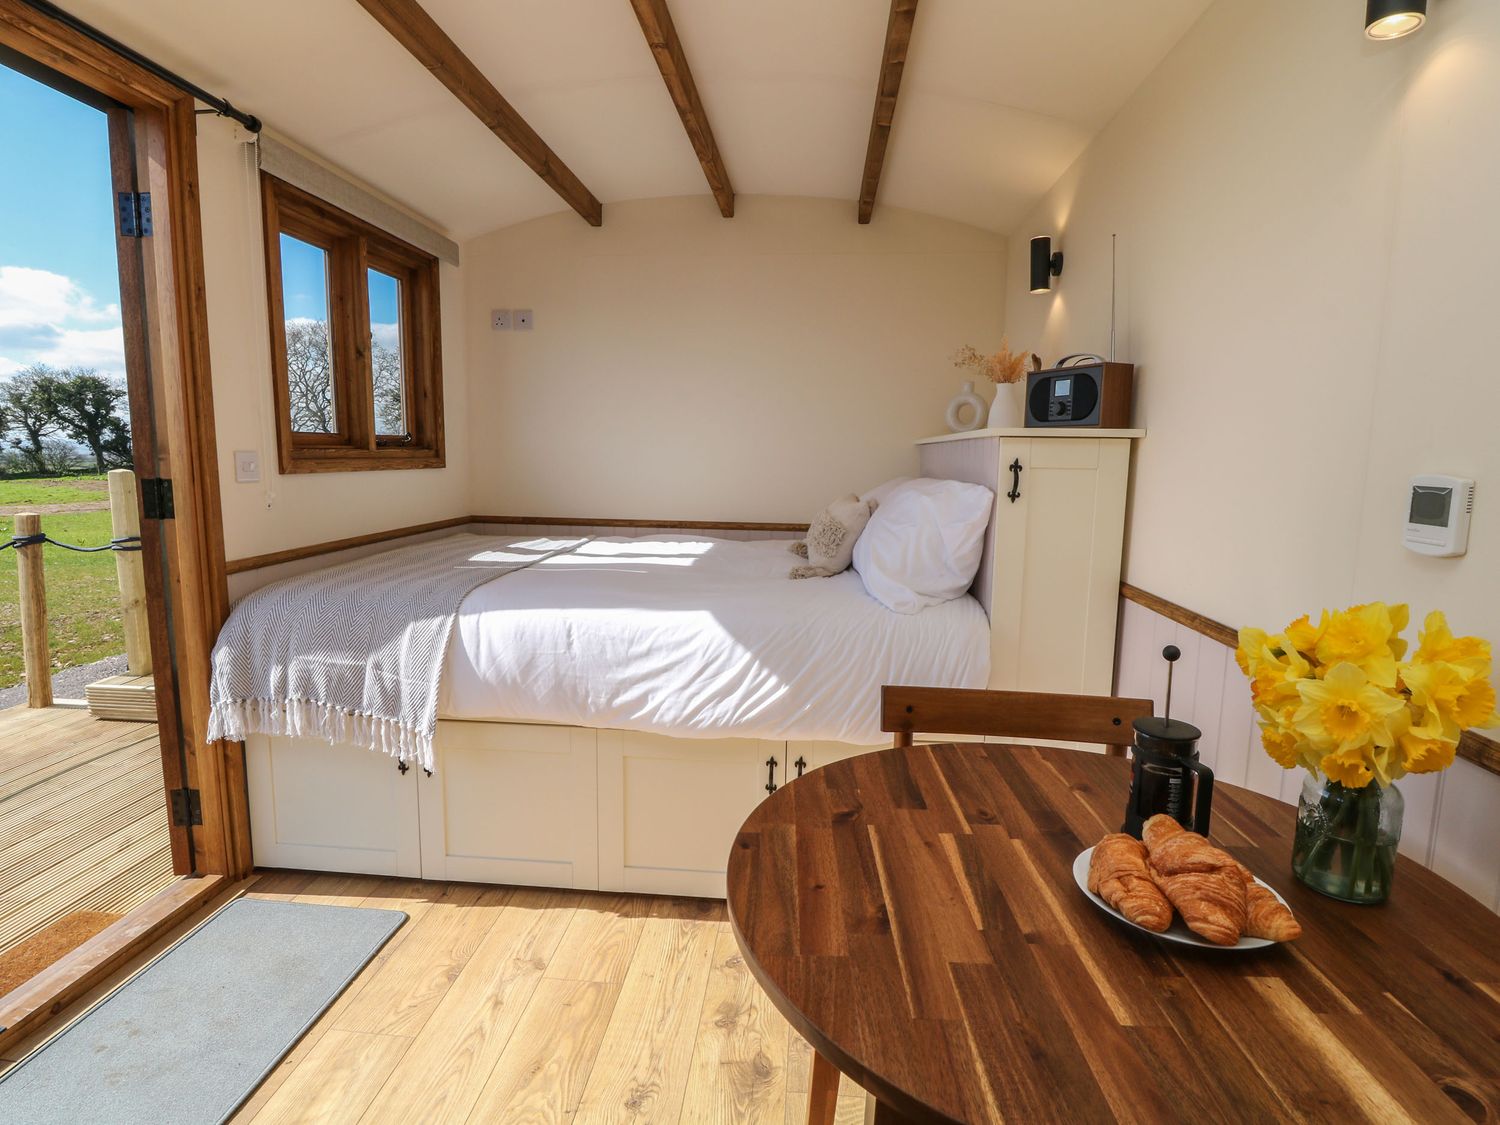 Buzzards, Morchard Bishop, Devon, underfloor heating, wood-fired hot tub, studio-style layout, 1bed.